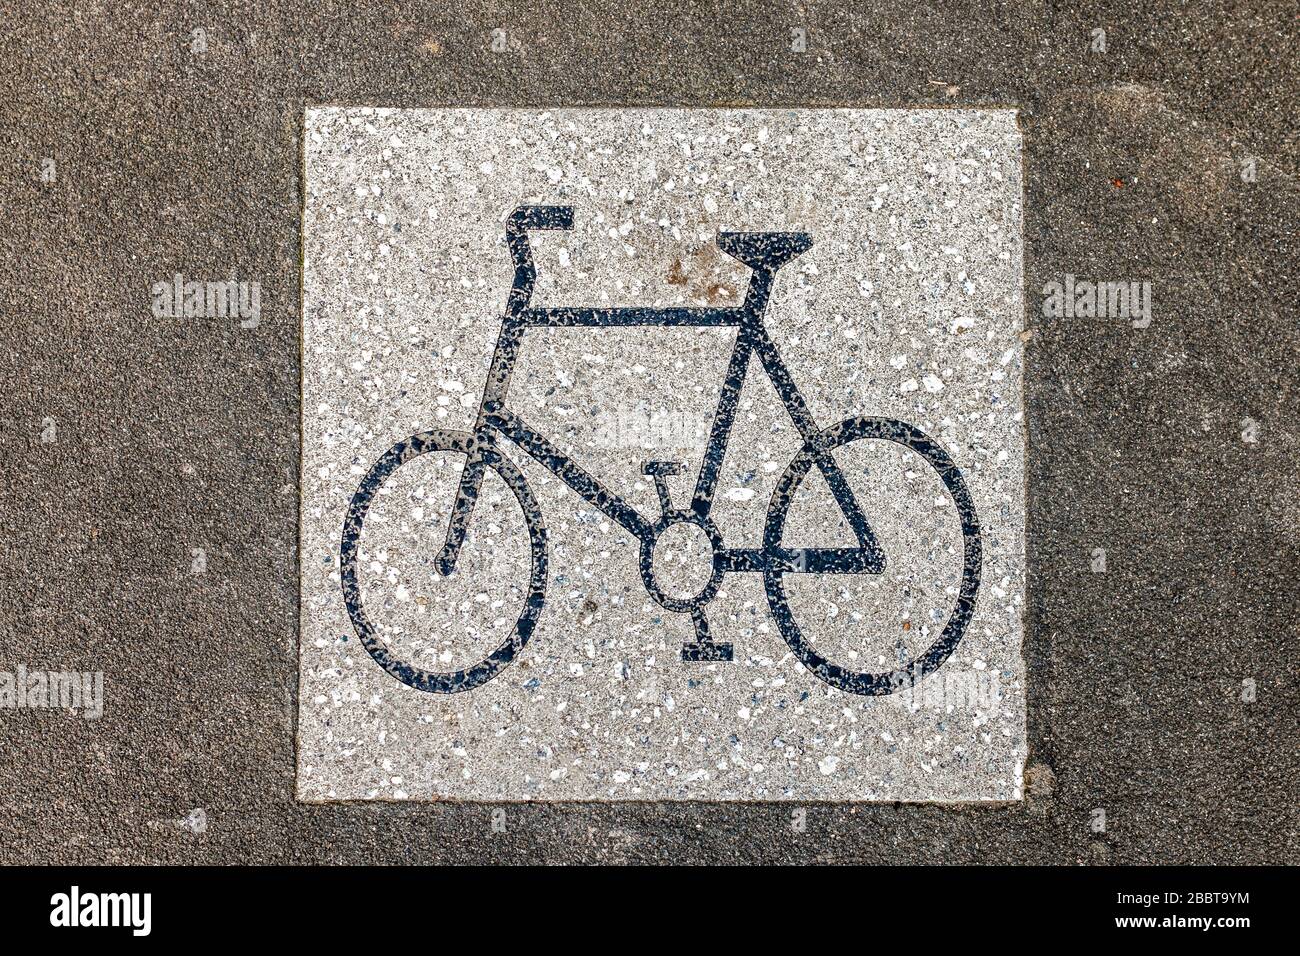 Fahrrad-Lane-Zeichen Stockfoto